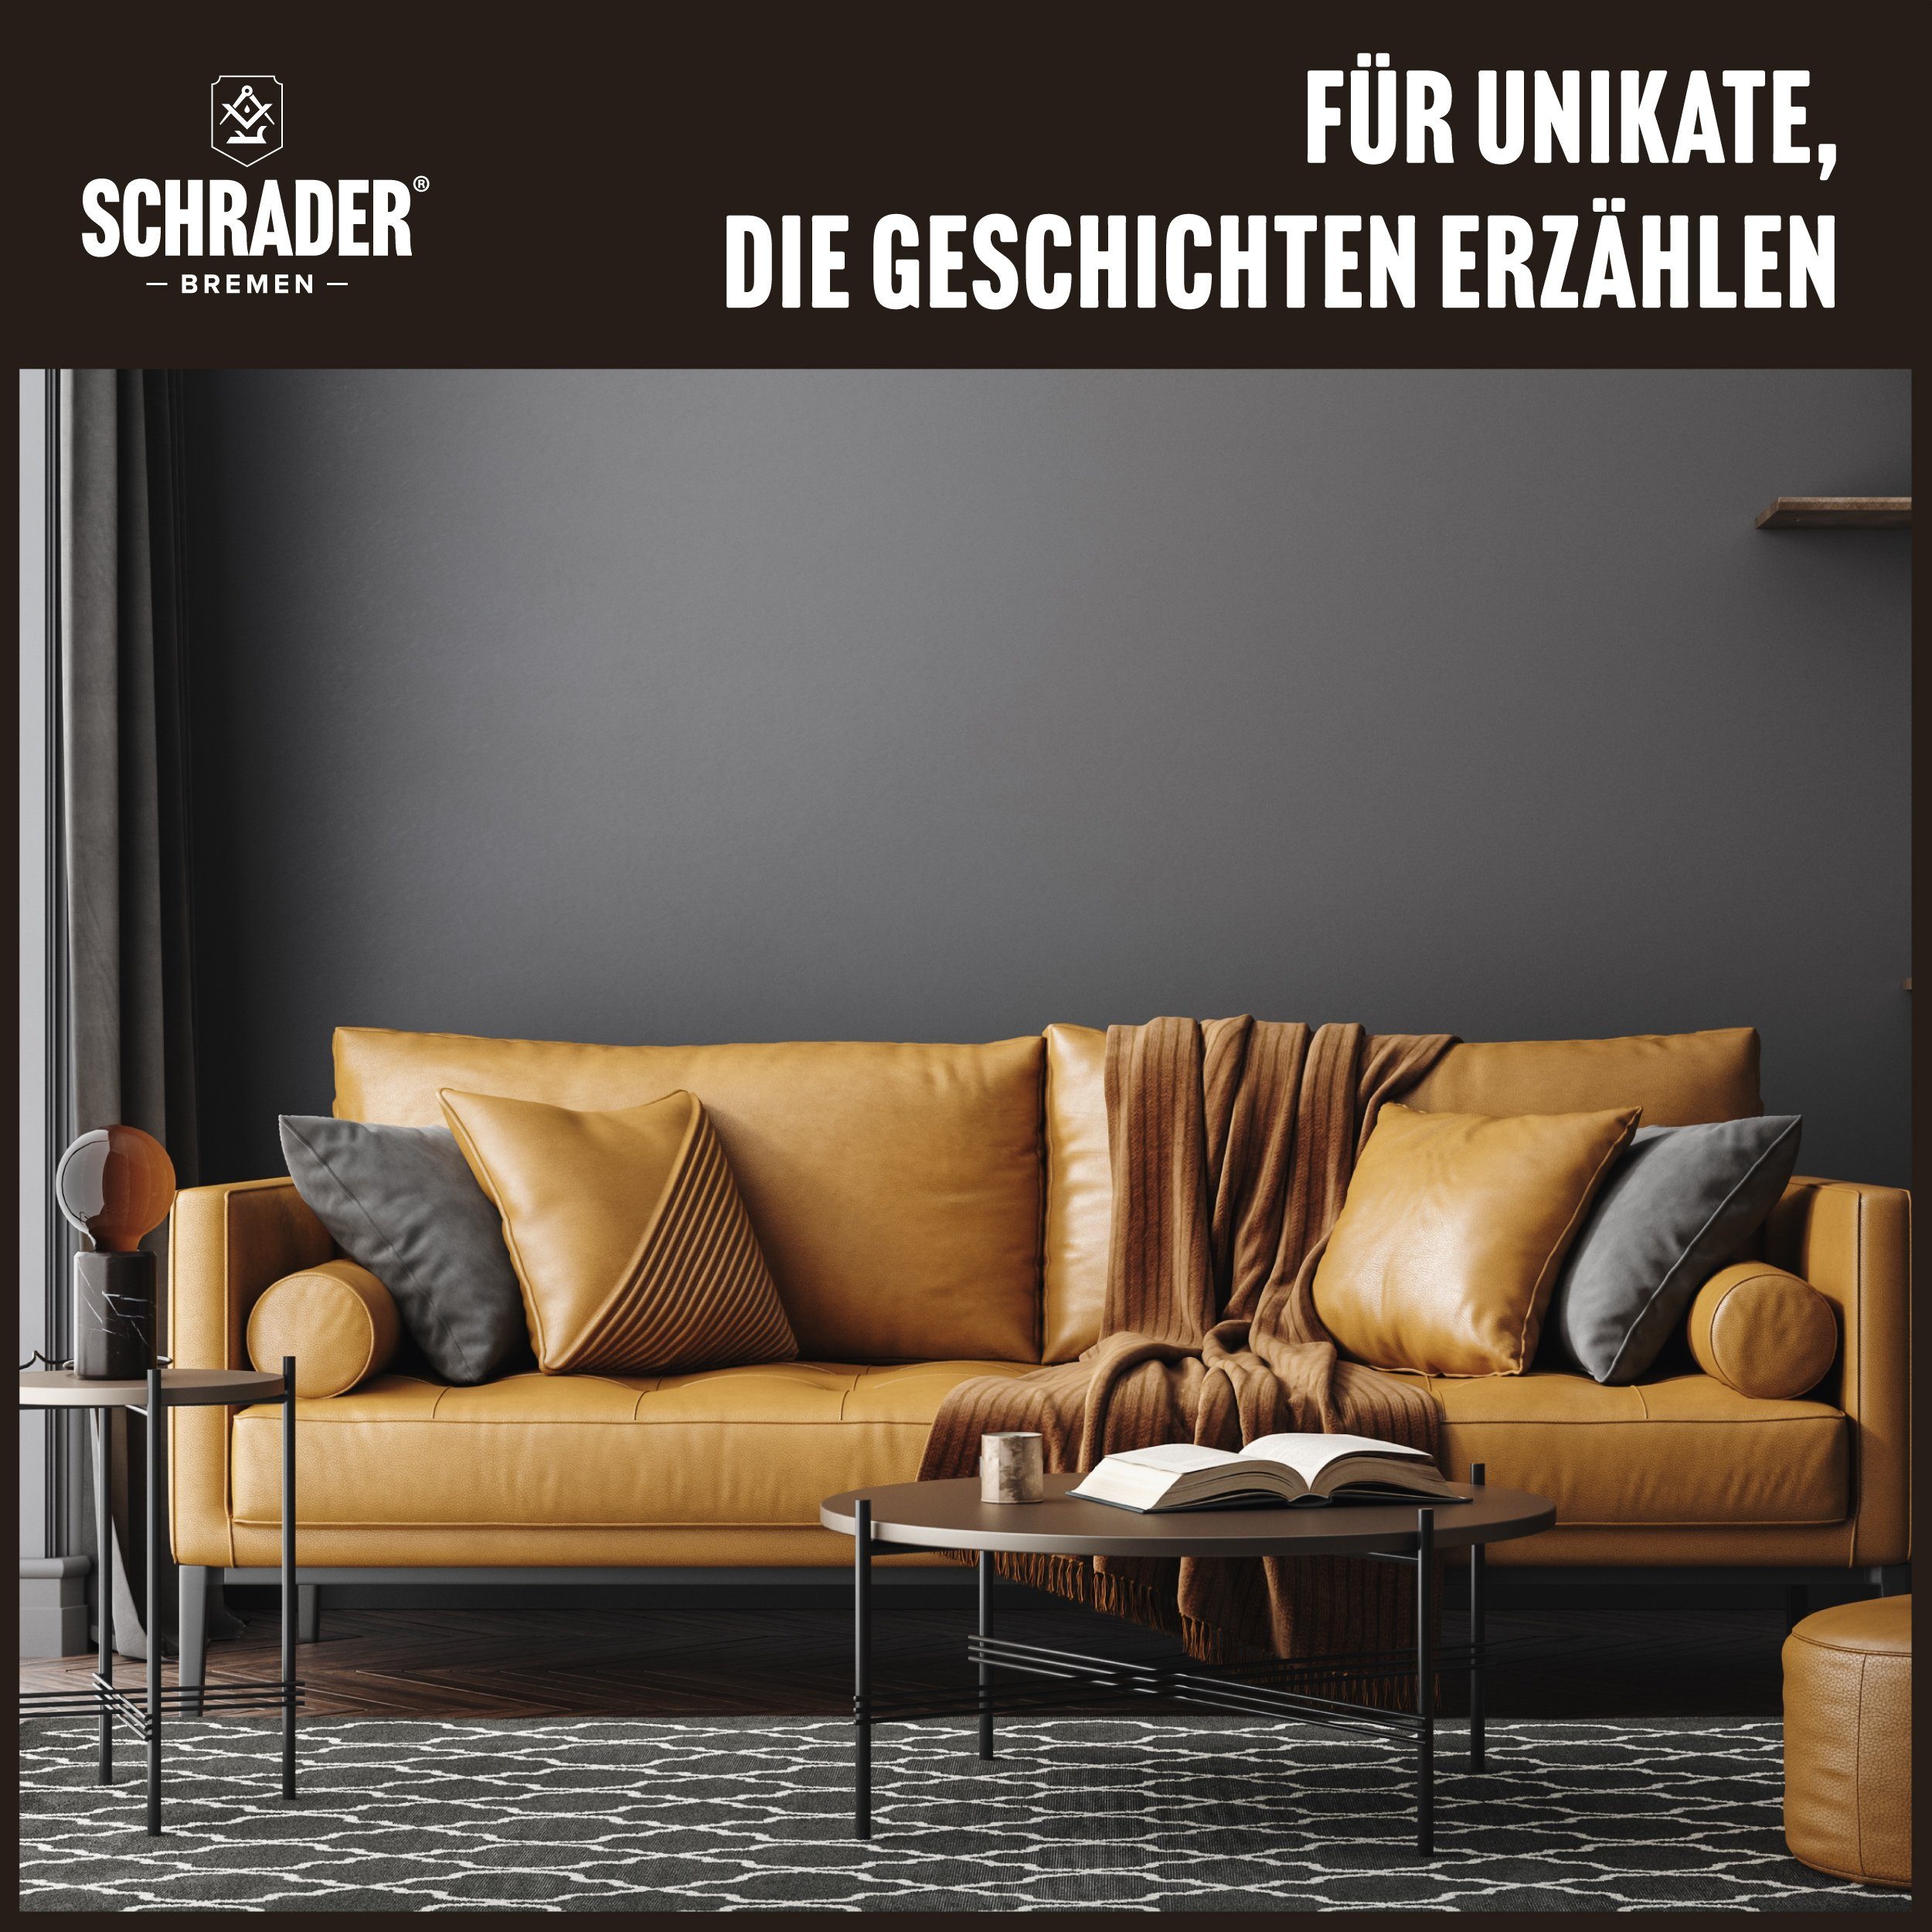 Made Germany) Balsam Lederpflege (Reiniger, Poliertuch Lederkleidung Lederreiniger und Set & - für - in Ledermöbel Schrader